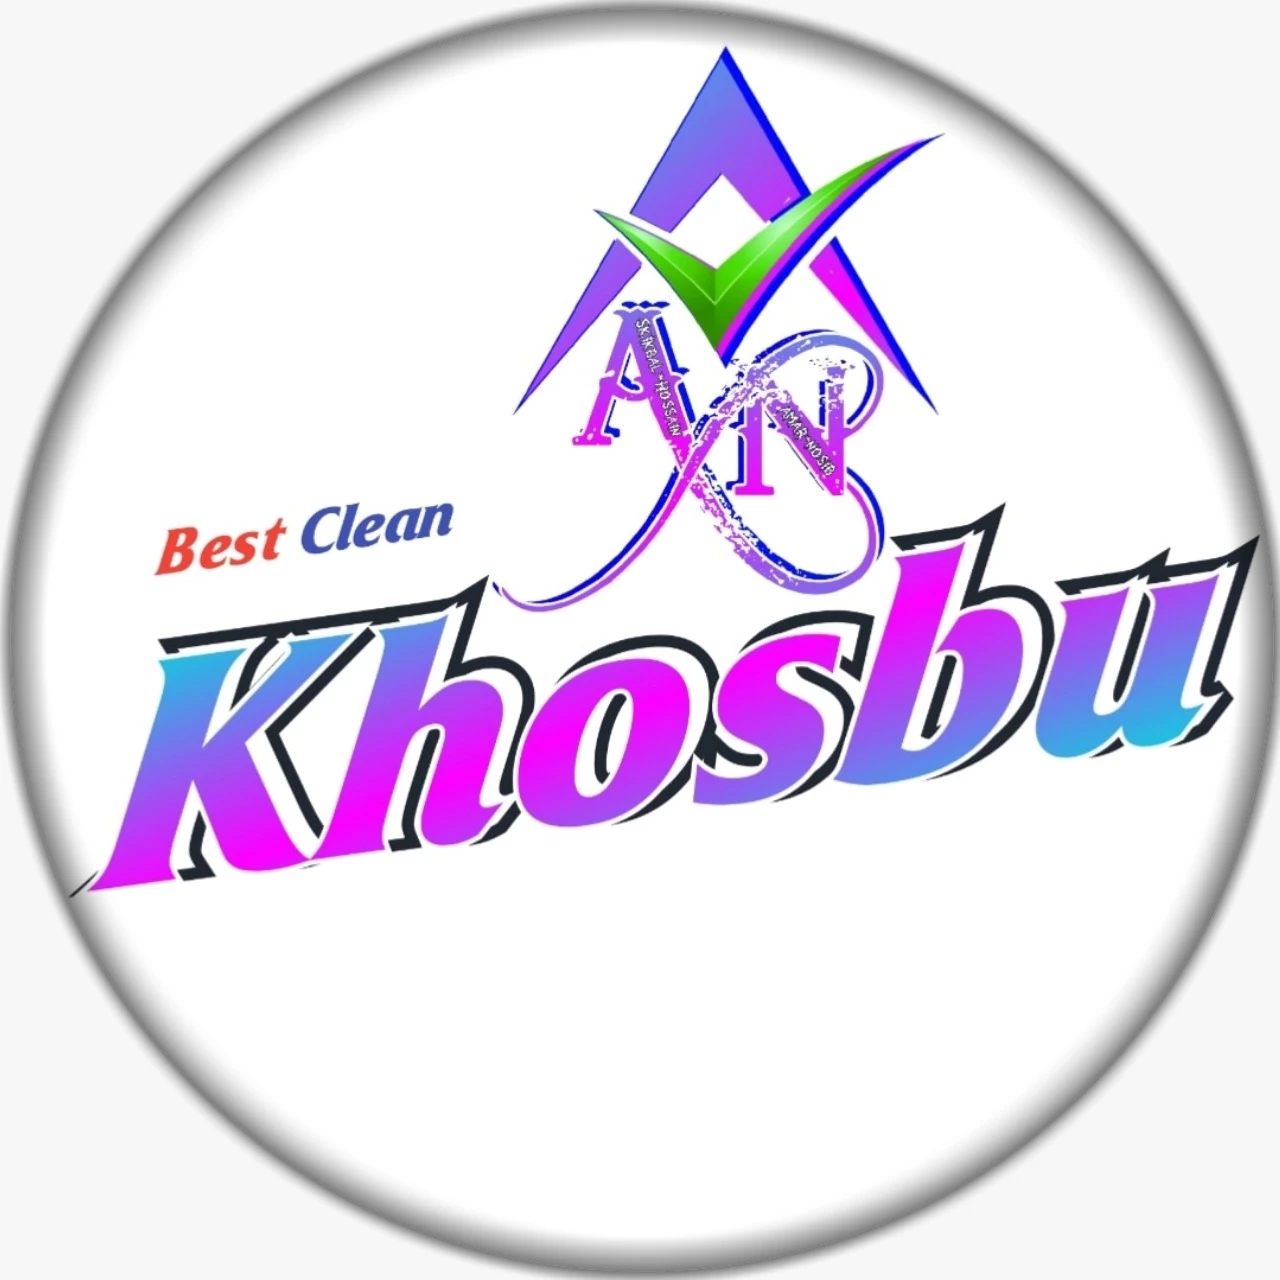 Khosbu Clean